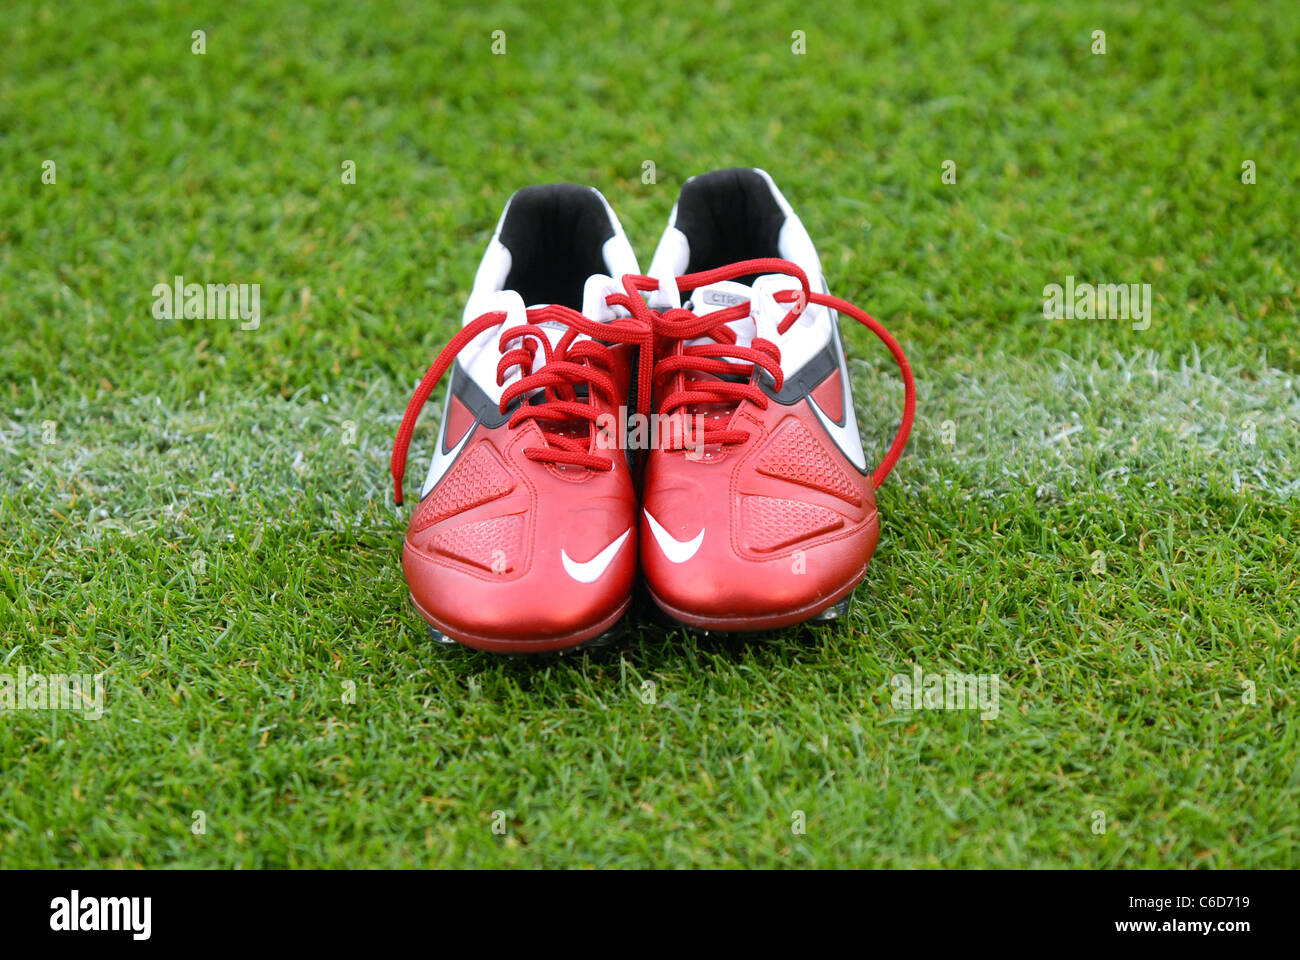 Par de zapatos de fútbol Nike roja sobre la línea blanca de un campo de fútbol Fotografía stock - Alamy